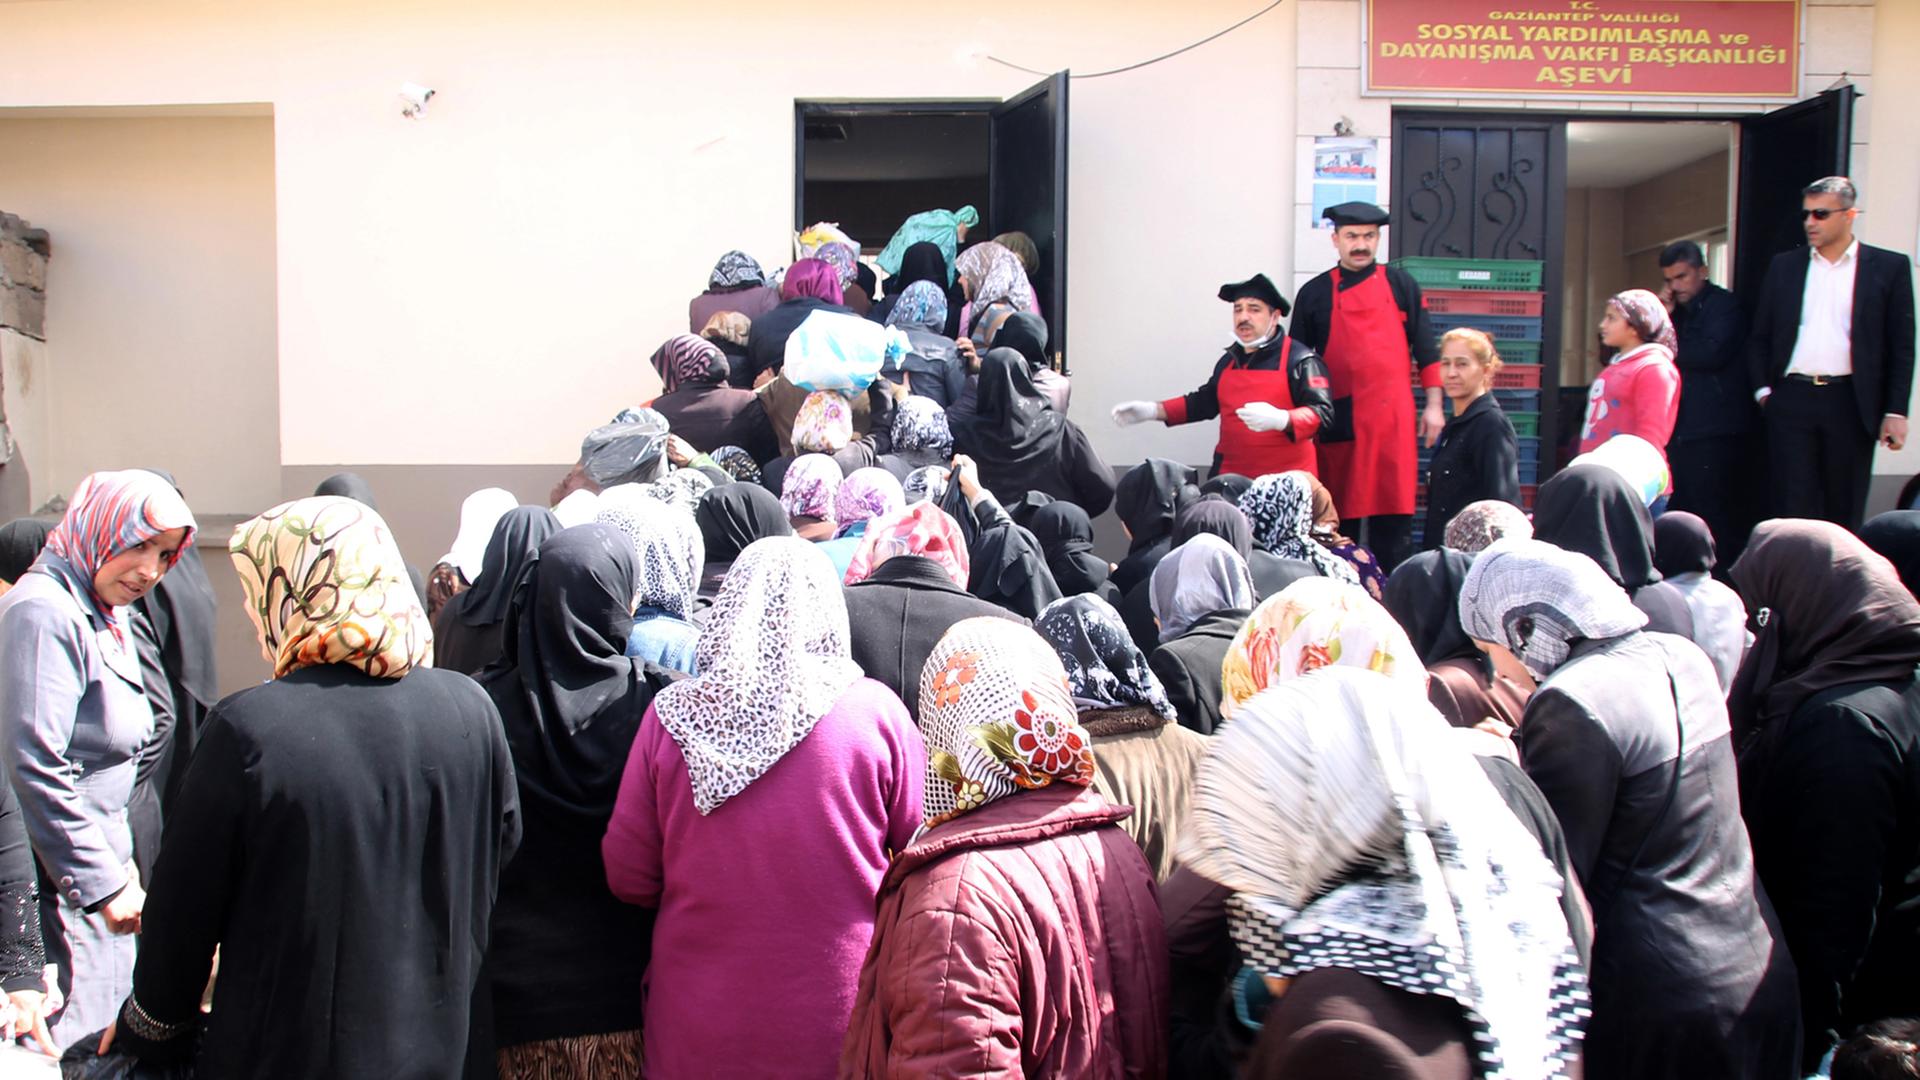 Syrische Frauen warten im Flüchtlingslager in Gaziantep auf Essen.